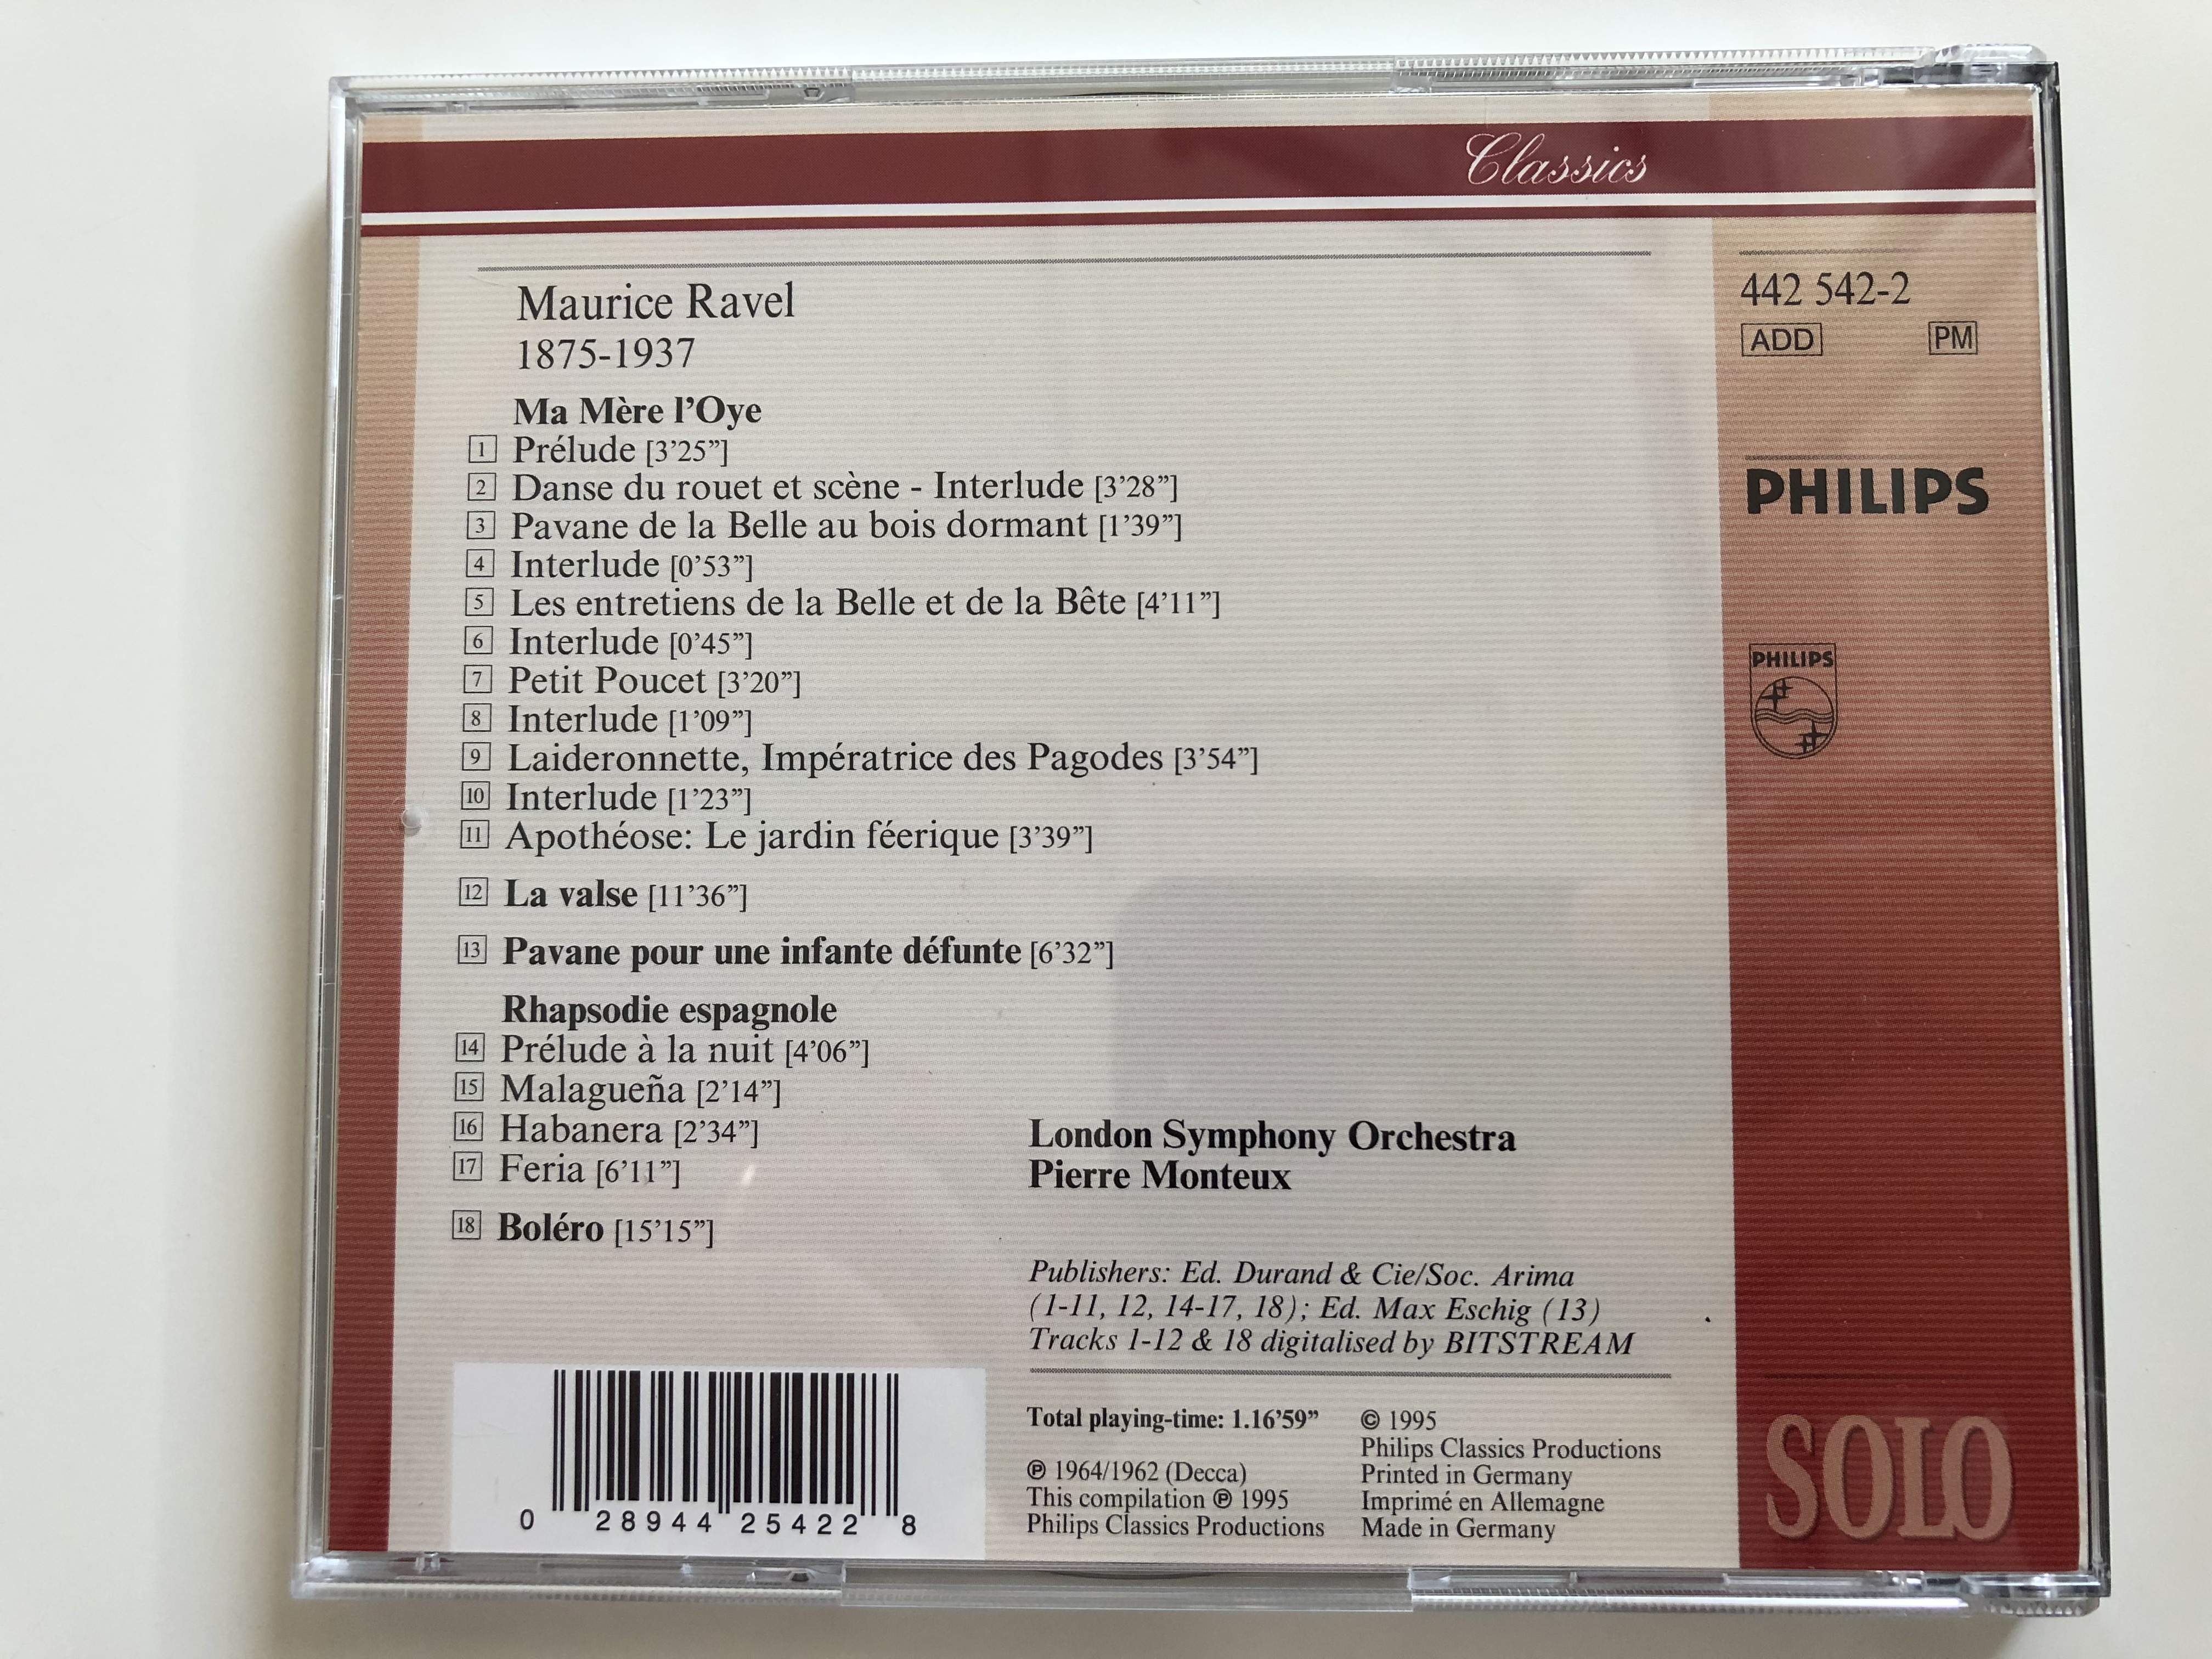 ravel-bolero-la-valse-rhapsodie-espagnole-pavane-pour-une-infante-defunte-ma-mere-l-oye-london-symphony-orchestra-pierre-monteux-philips-audio-cd-1995-442-542-2-7-.jpg